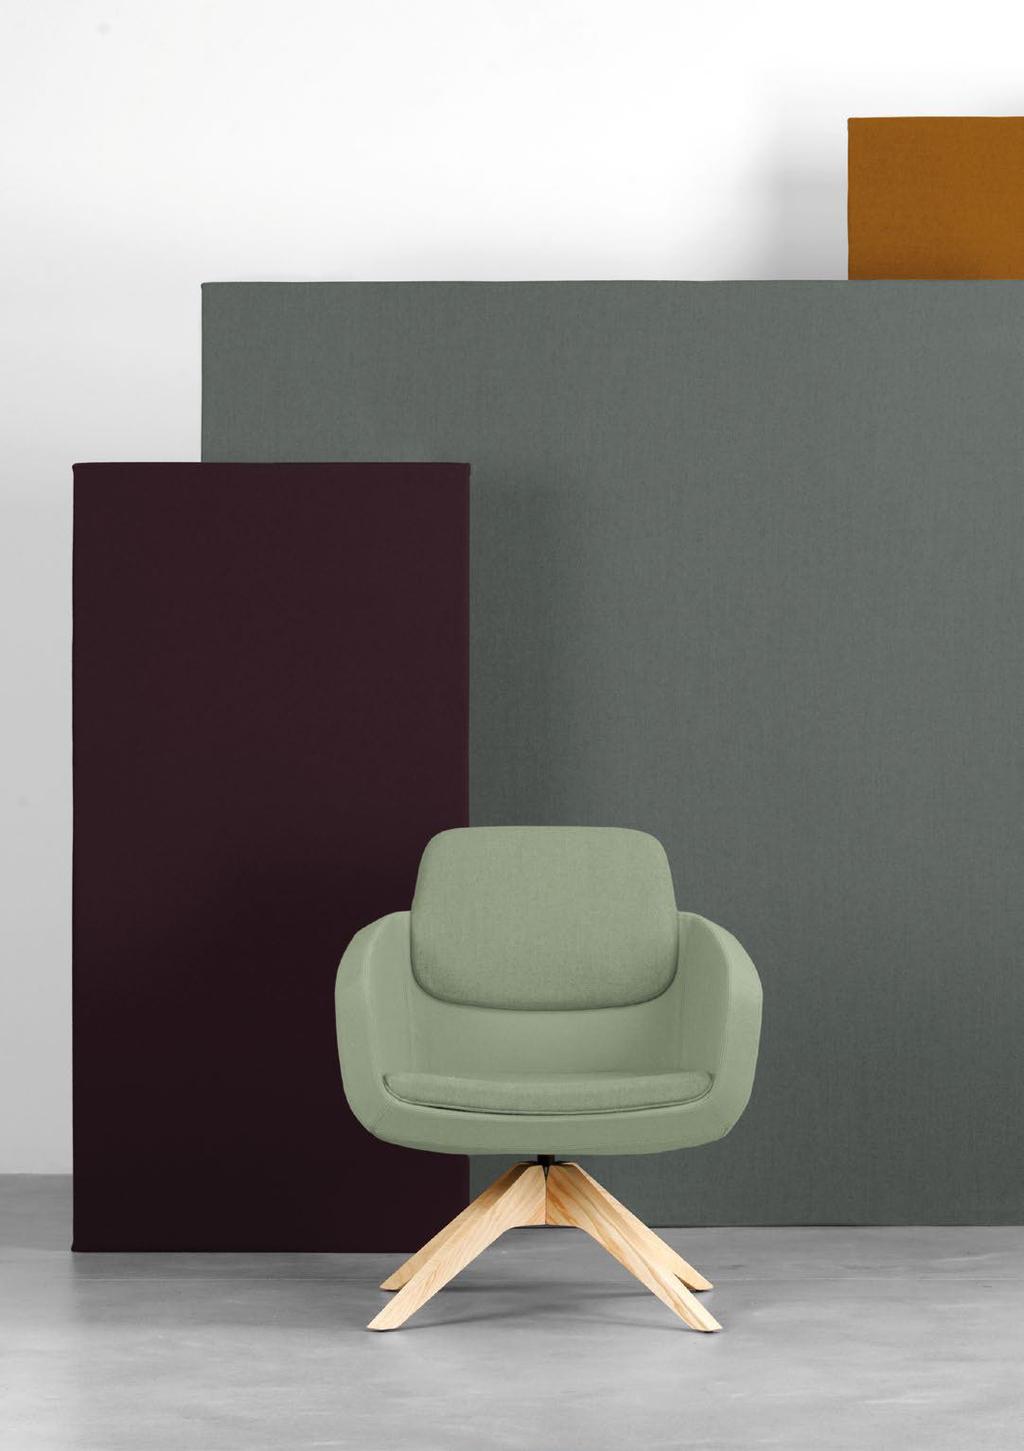 71 ARCA Orlandini Design Arca rappresenta una declinazione completa del concetto di poltrona per spazi attesa, meeting e lounge, proponendosi in 2 dimensioni di seduta e 3 differenti altezze di